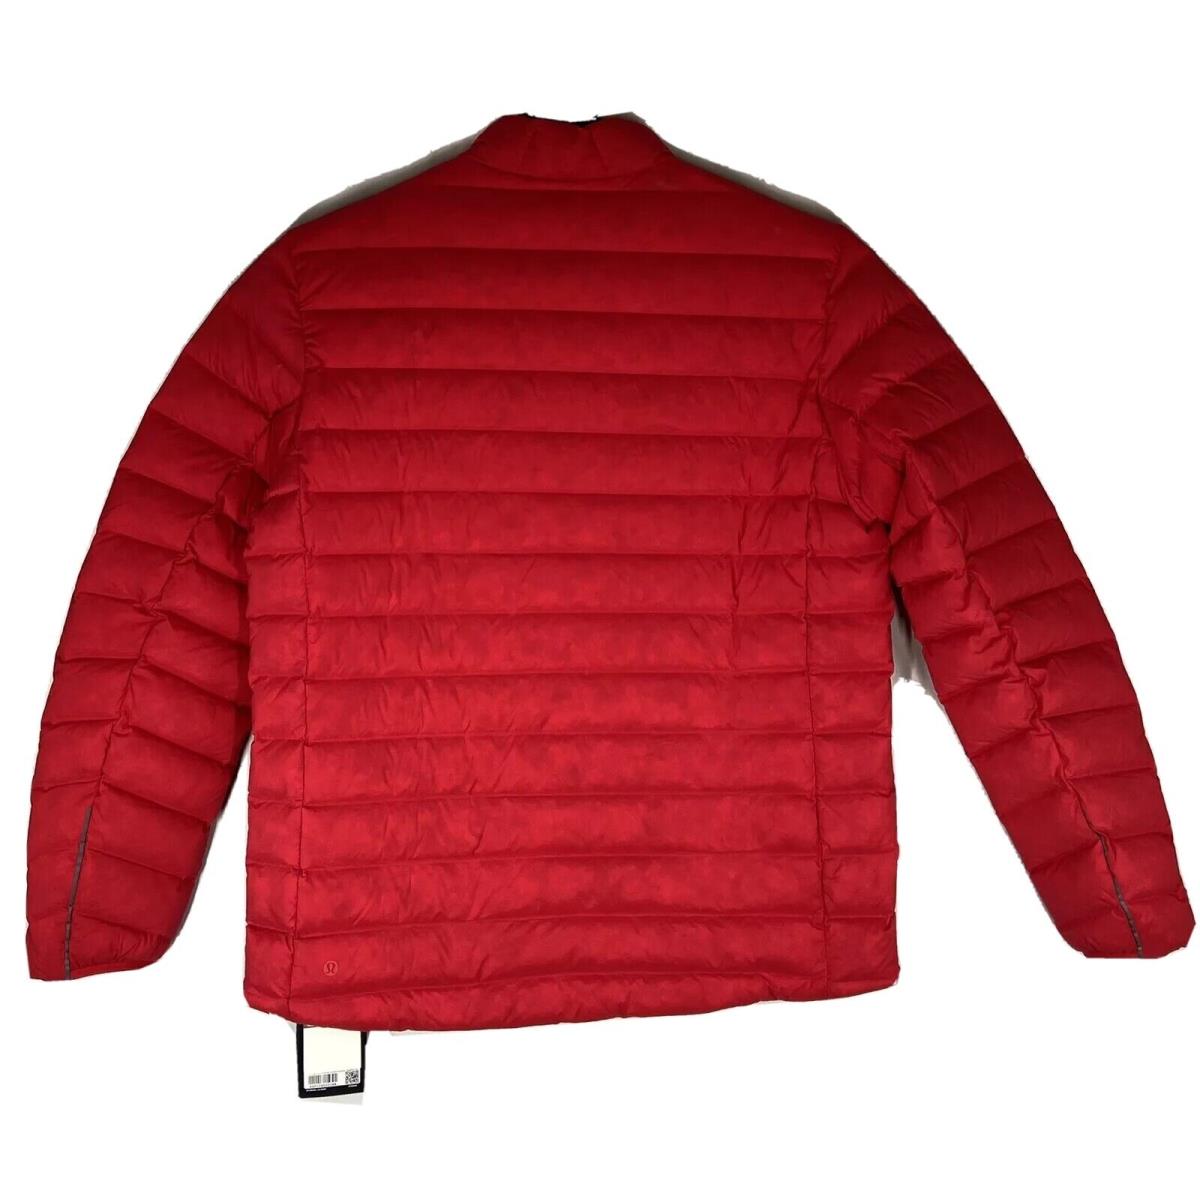 Lululemon Men`s Navigation Stretch Down Jacket Size XL Color Red Rdtd 700 Fill